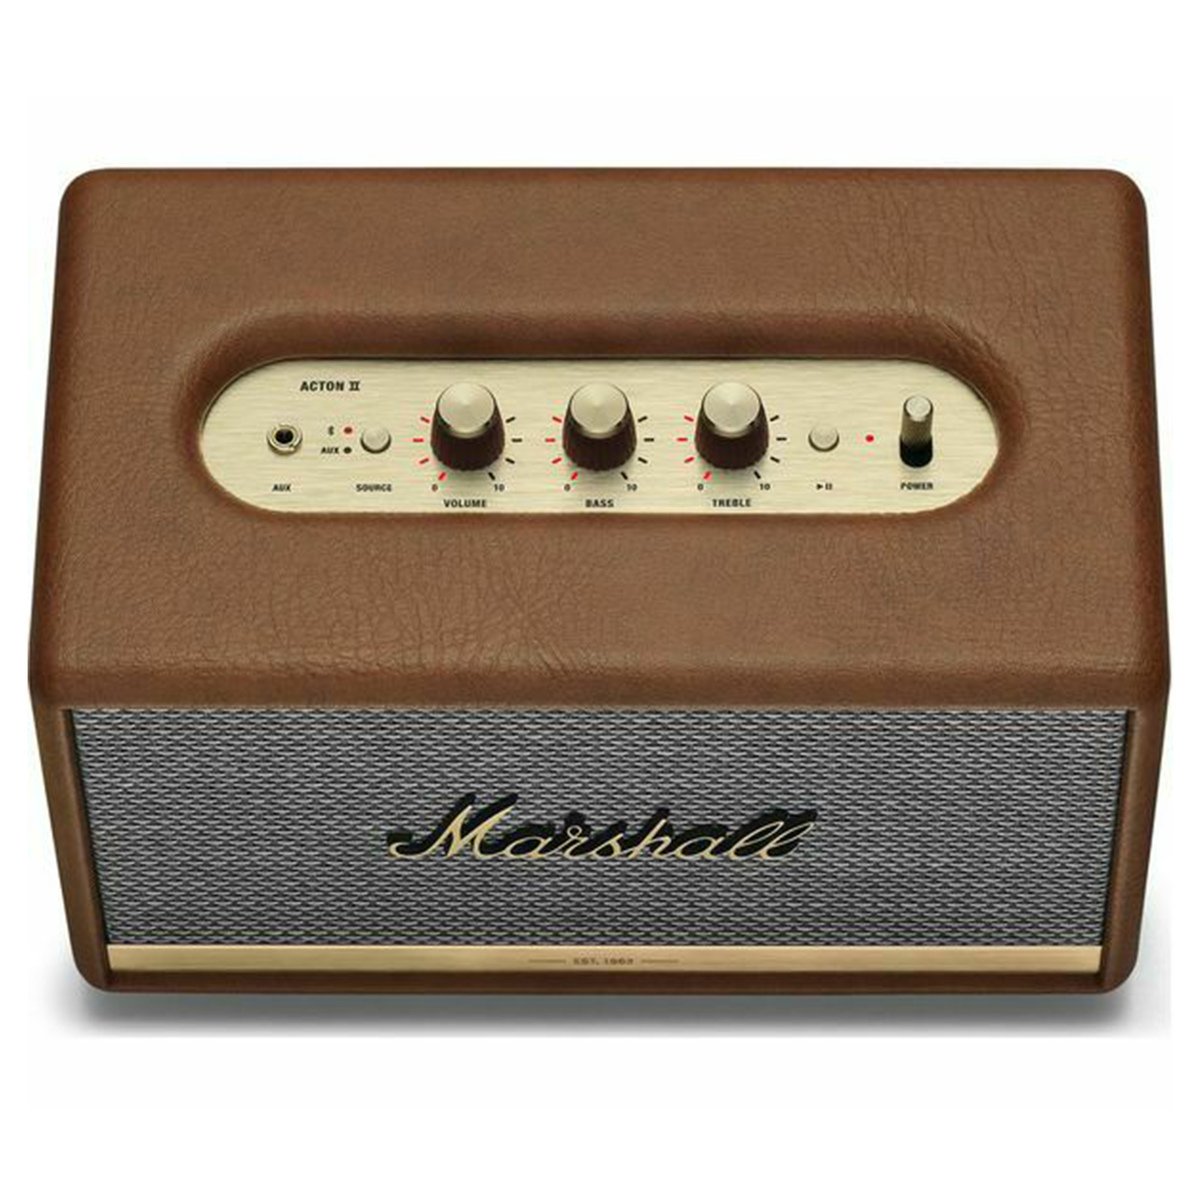 Marshall Acton II Brown Bluetooth Speaker